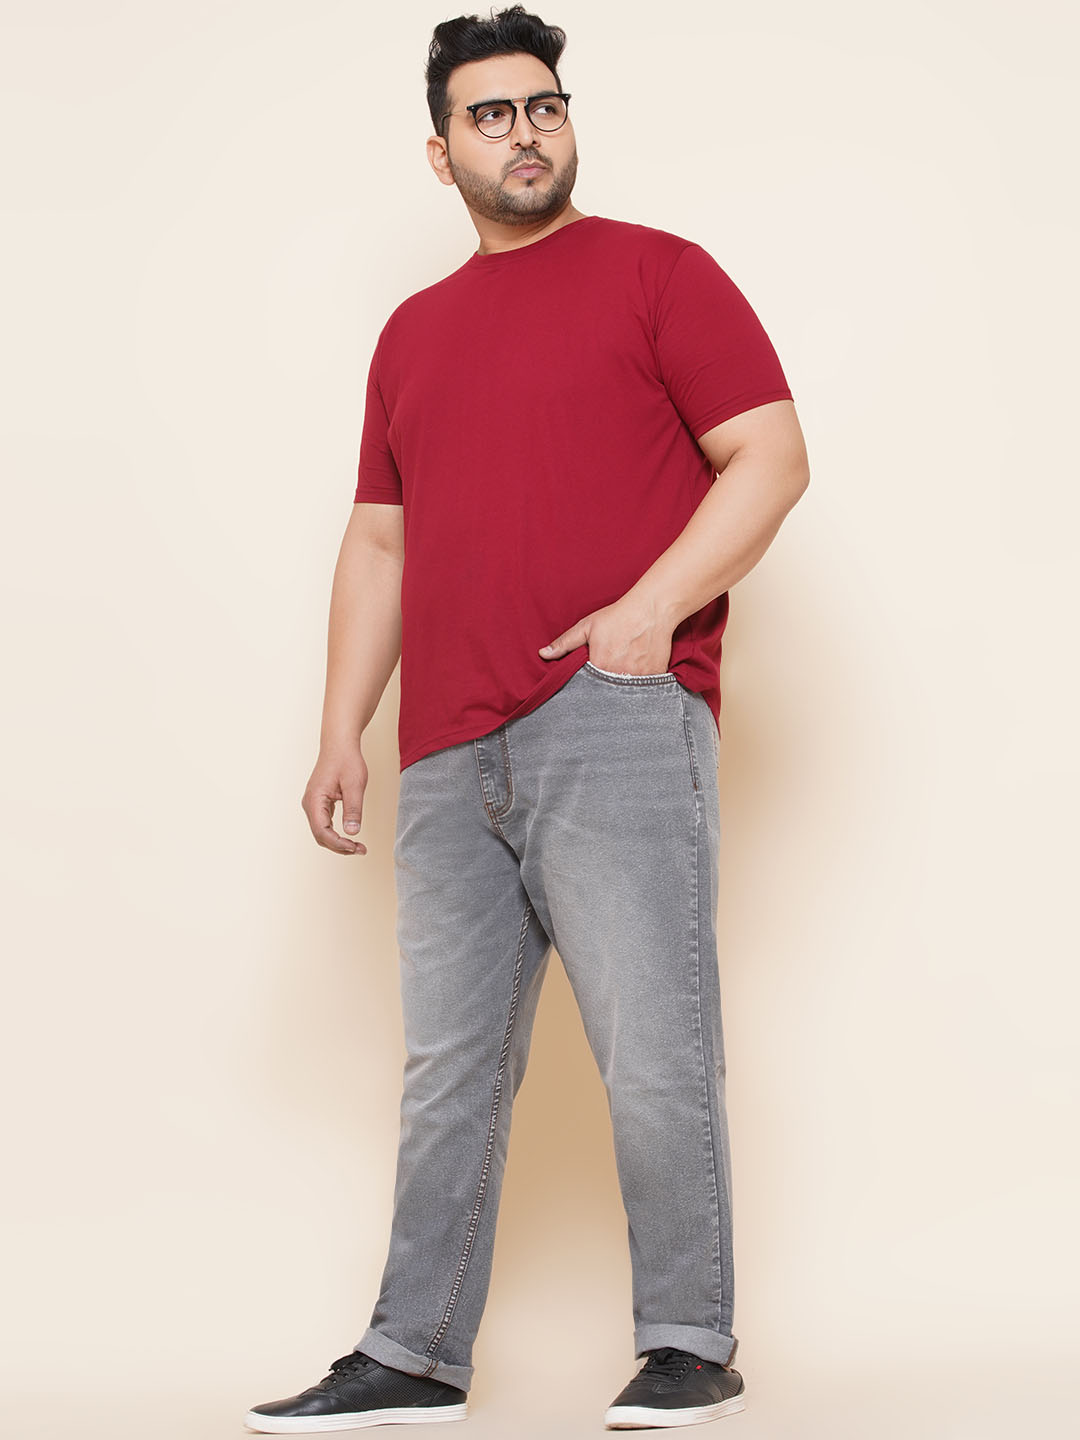 bottomwear/jeans/JPJ27014/jpj27014-6.jpg